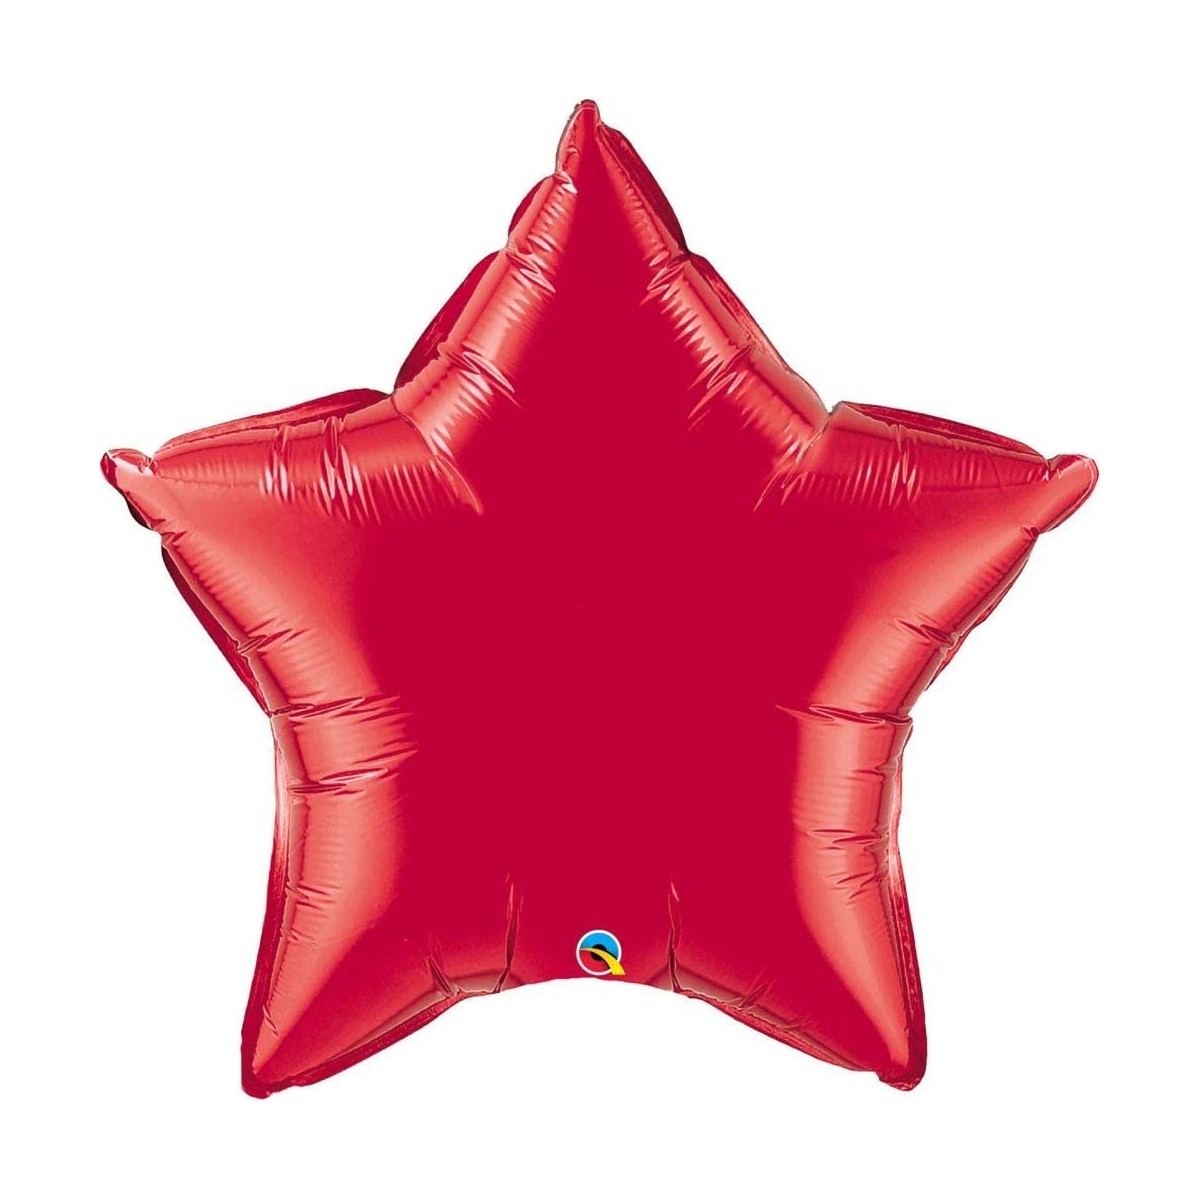 Palloncino rosso forma stella da 50 cm, in lamina, per feste